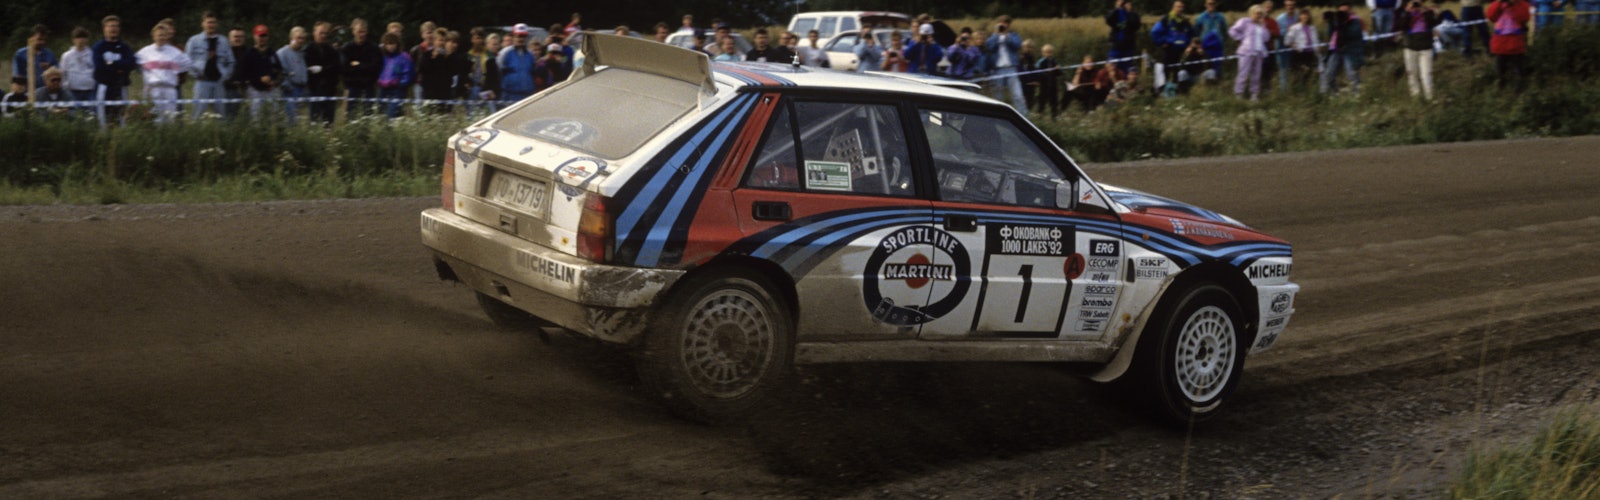 1992 1000 Lakes RallyWorldwide Copyright: McKlein